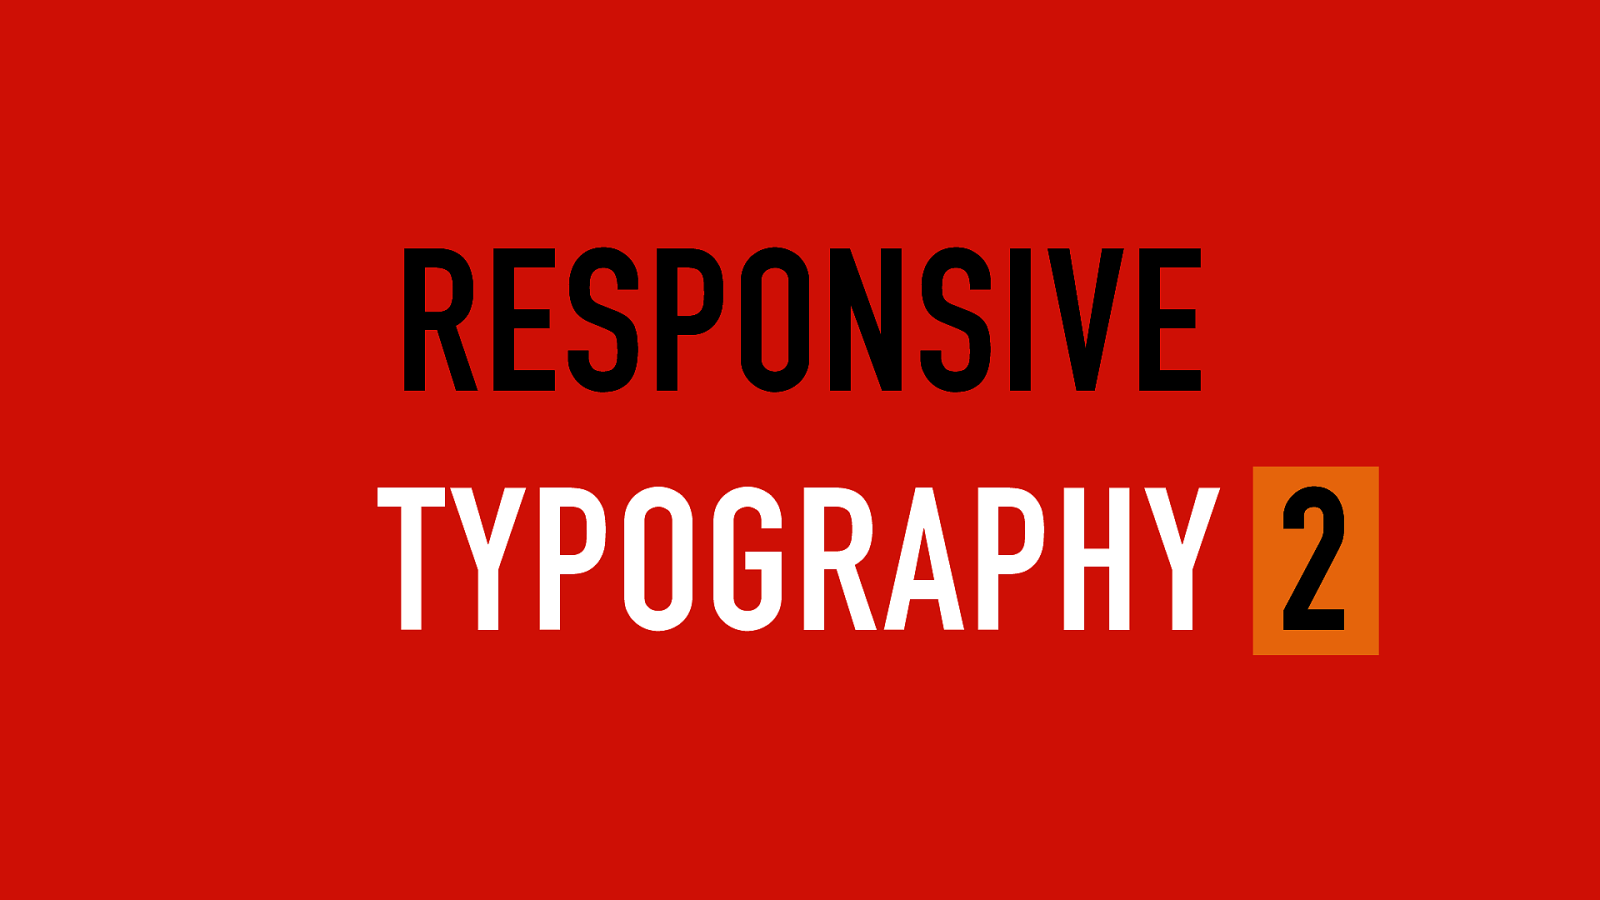 Responsive typography 2